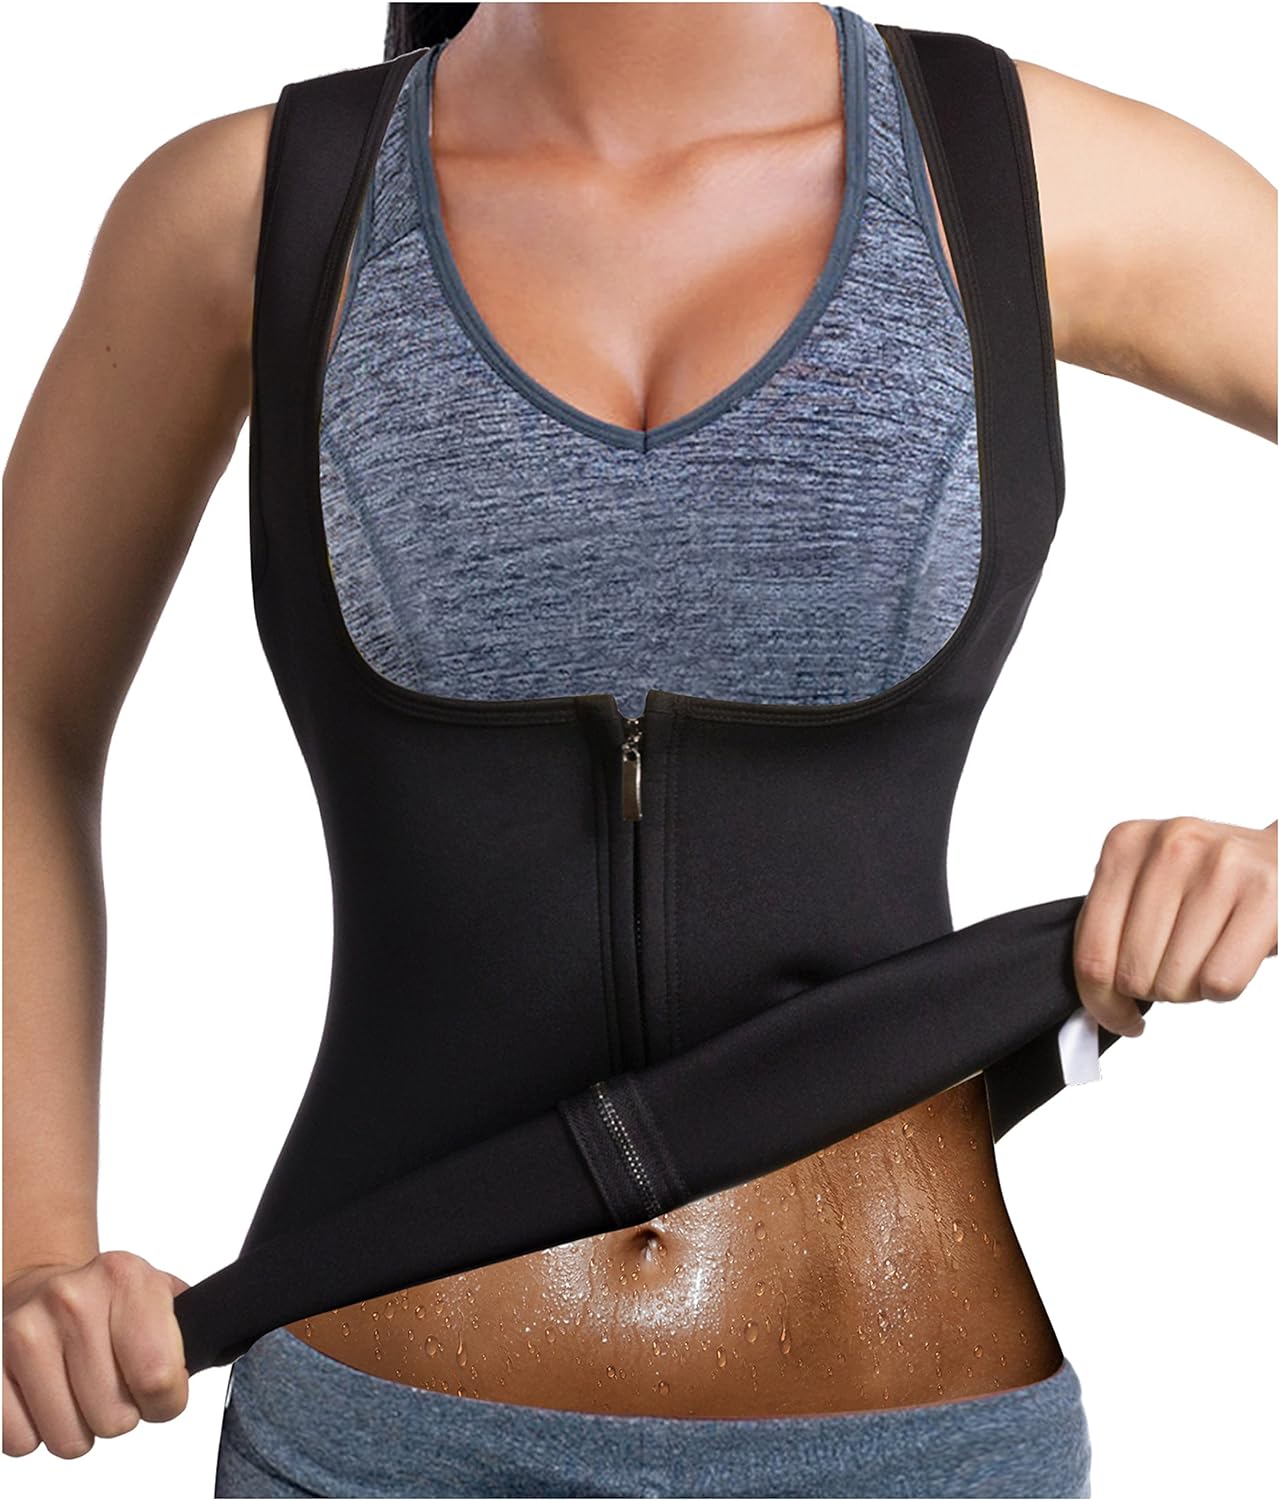 Hot Neoprene Corset Compression Sweat vest Body Shaper Zipper Slimming Sauna Tank Top Workout Shirt HOPLYNN Men Waist Trainer Vest for Weightloss